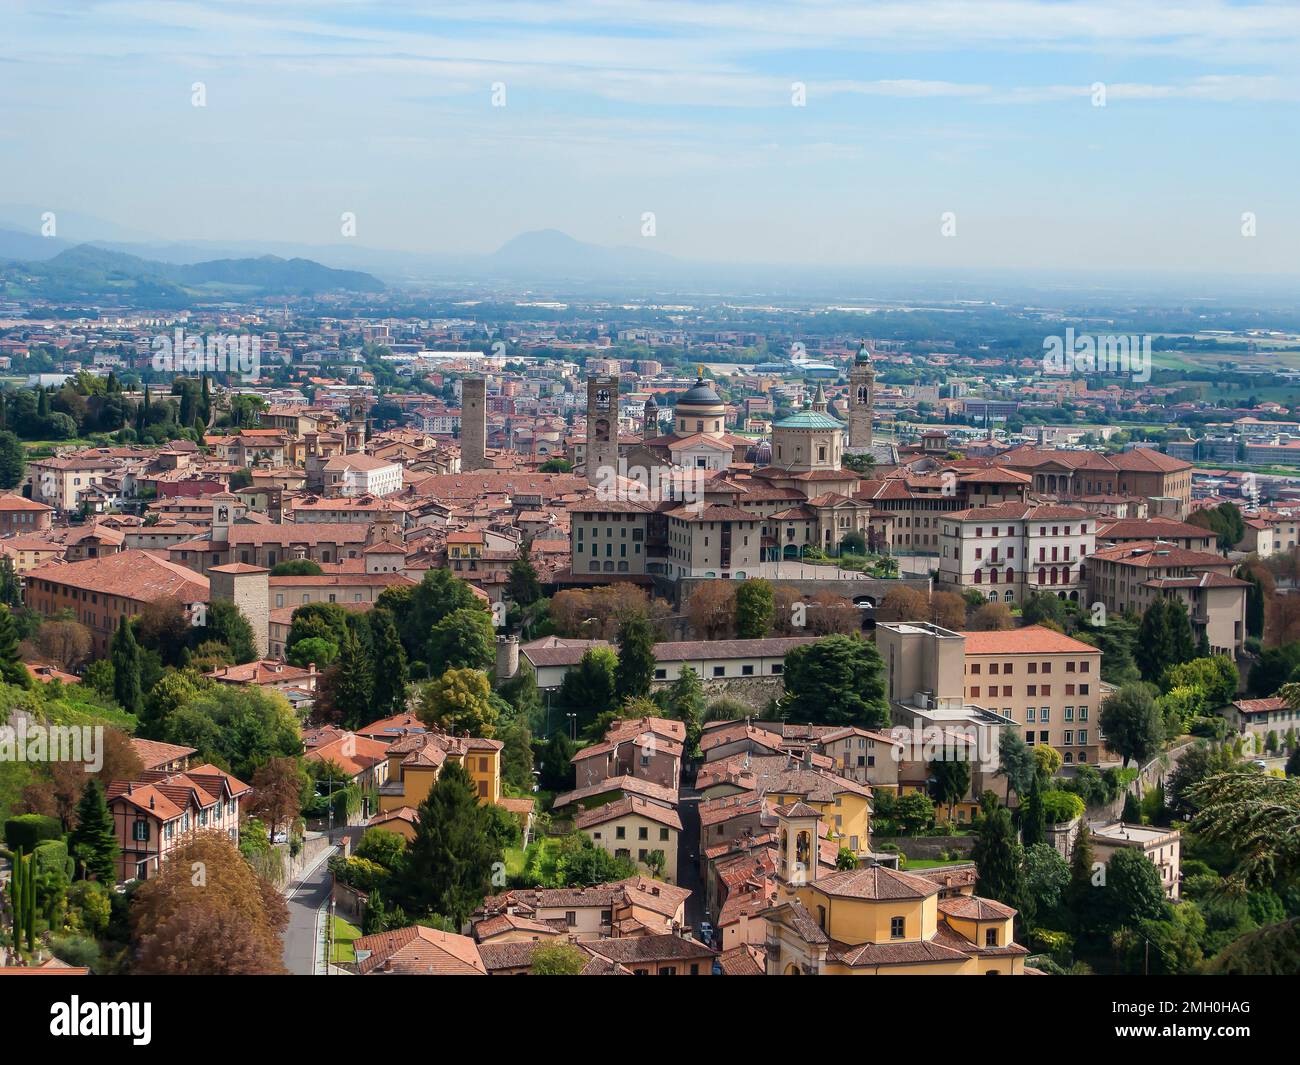 Vue panoramique sur la vieille ville, les Apennines et la plaine de Padan depuis la colline de San Vigilio, Bergame, Italie Banque D'Images